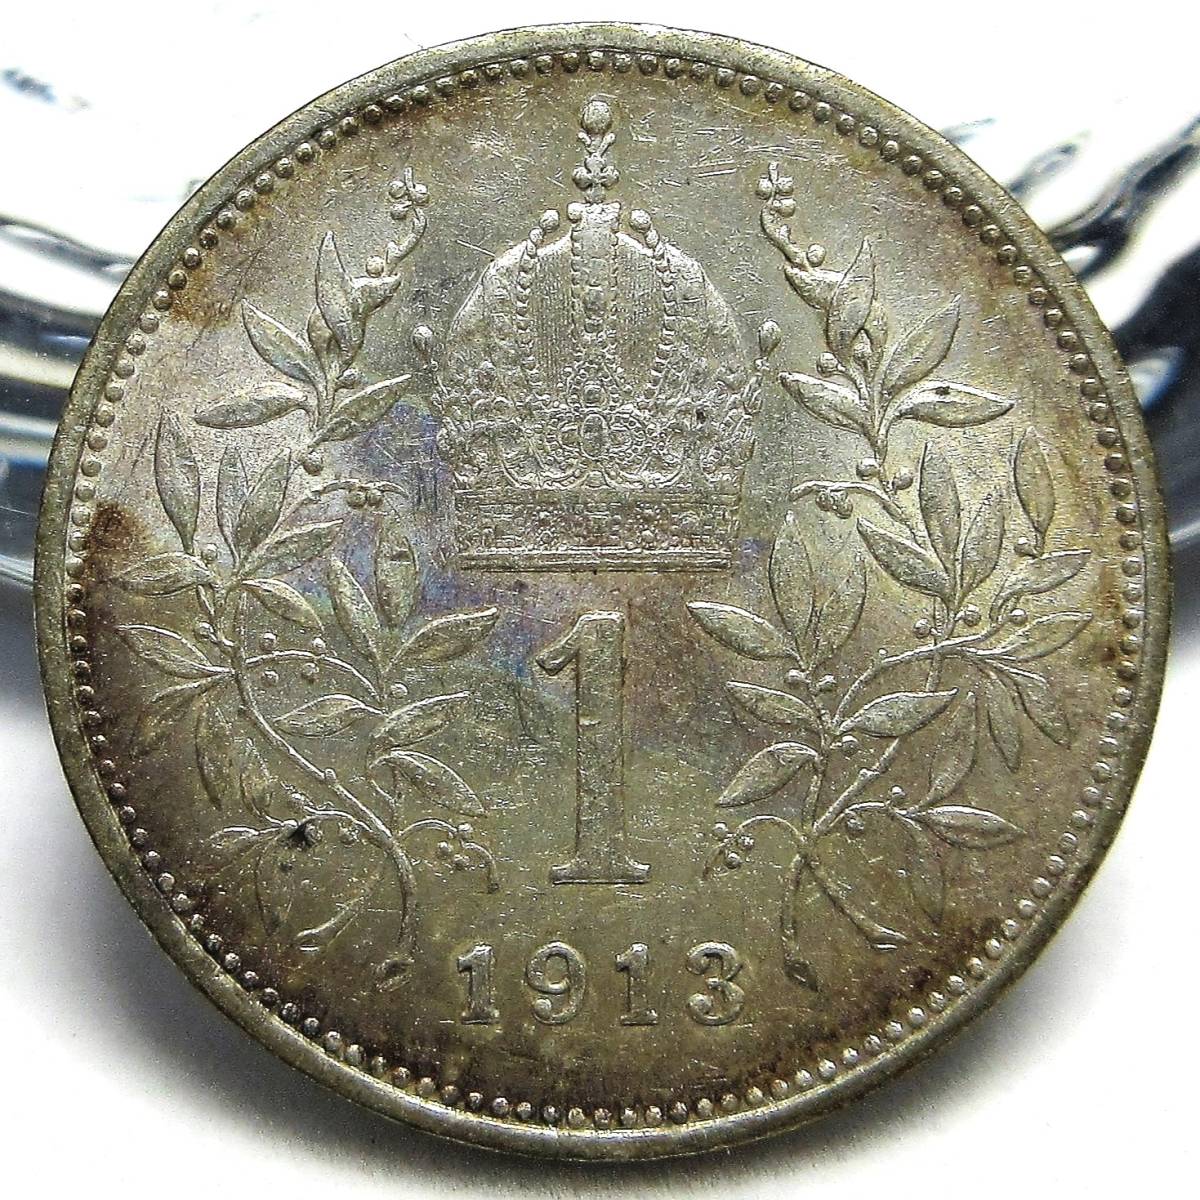 オーストリア=ハンガリー帝国 1コロナ銀貨(1CORONA) 1913年 22.94mm 5.02g KM#2820 フランツ・ヨーゼフ1世_画像1